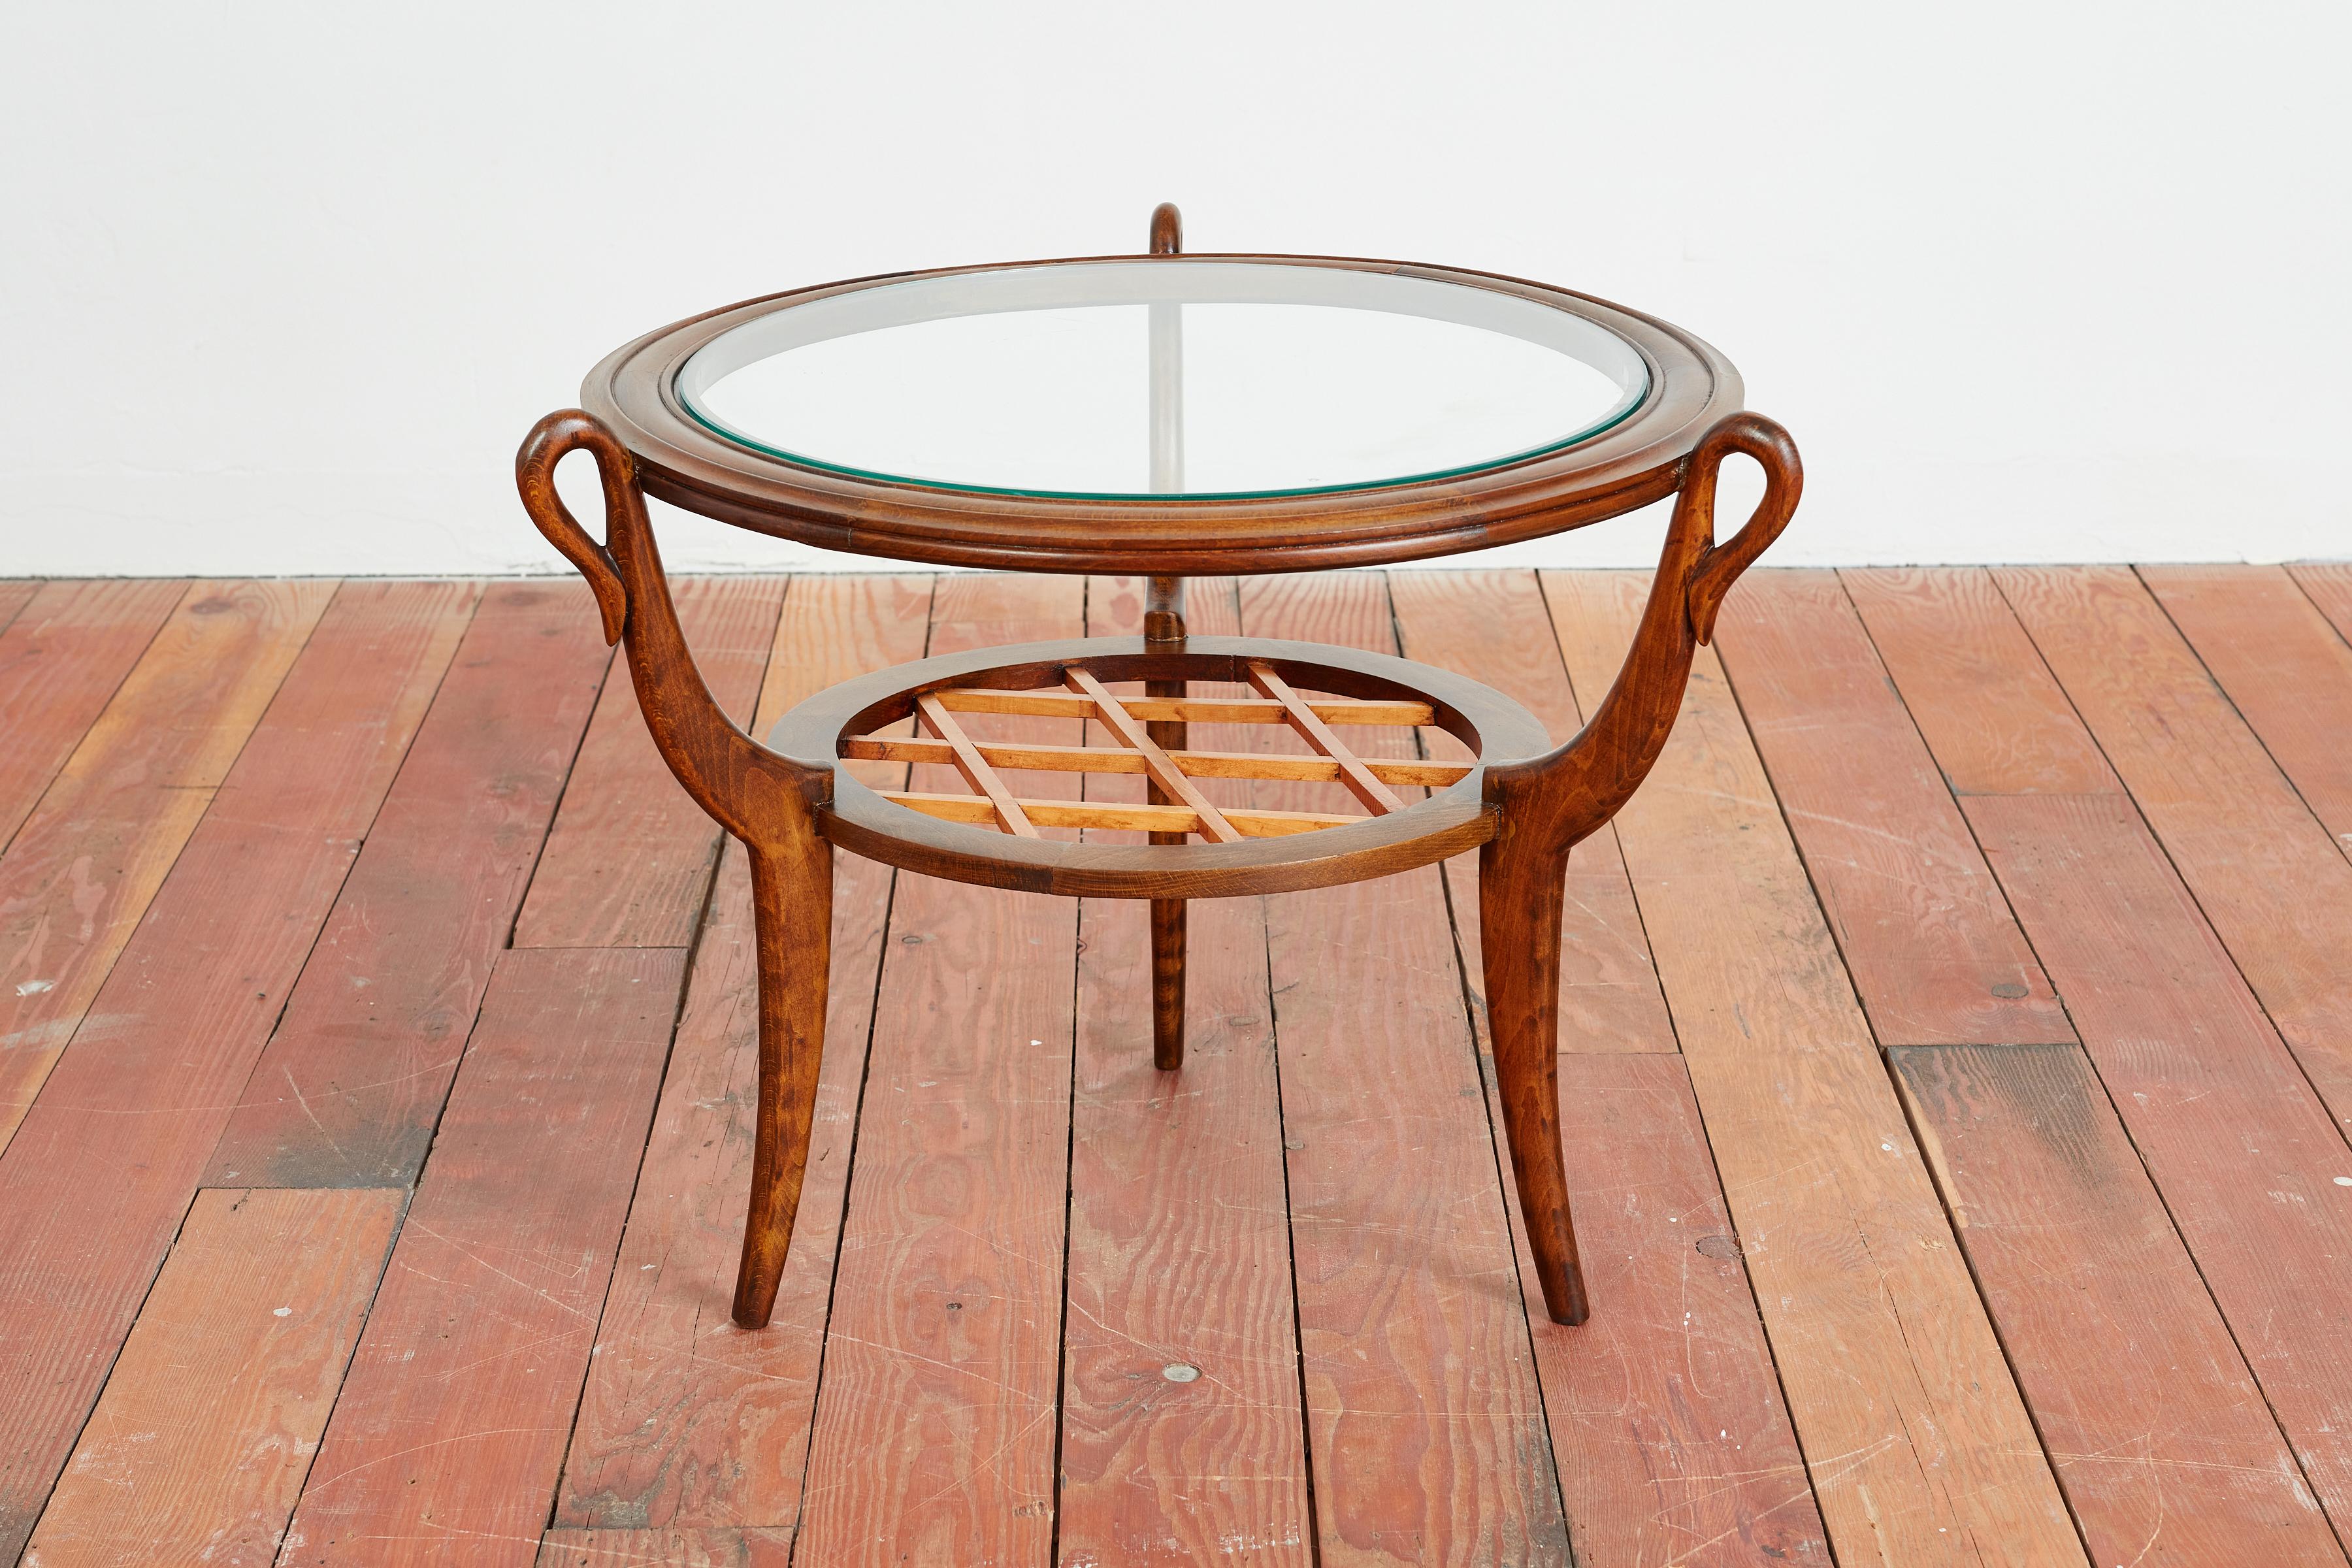 Table d'appoint élégante de Paolo Buffa - 
Italie, vers les années 1940 
Fabriqué en bois de noyer avec une étagère en bois tressé, de gracieux pieds courbés et un plateau en verre incrusté. 
Boucles circulaires à la jonction des jambes et de la